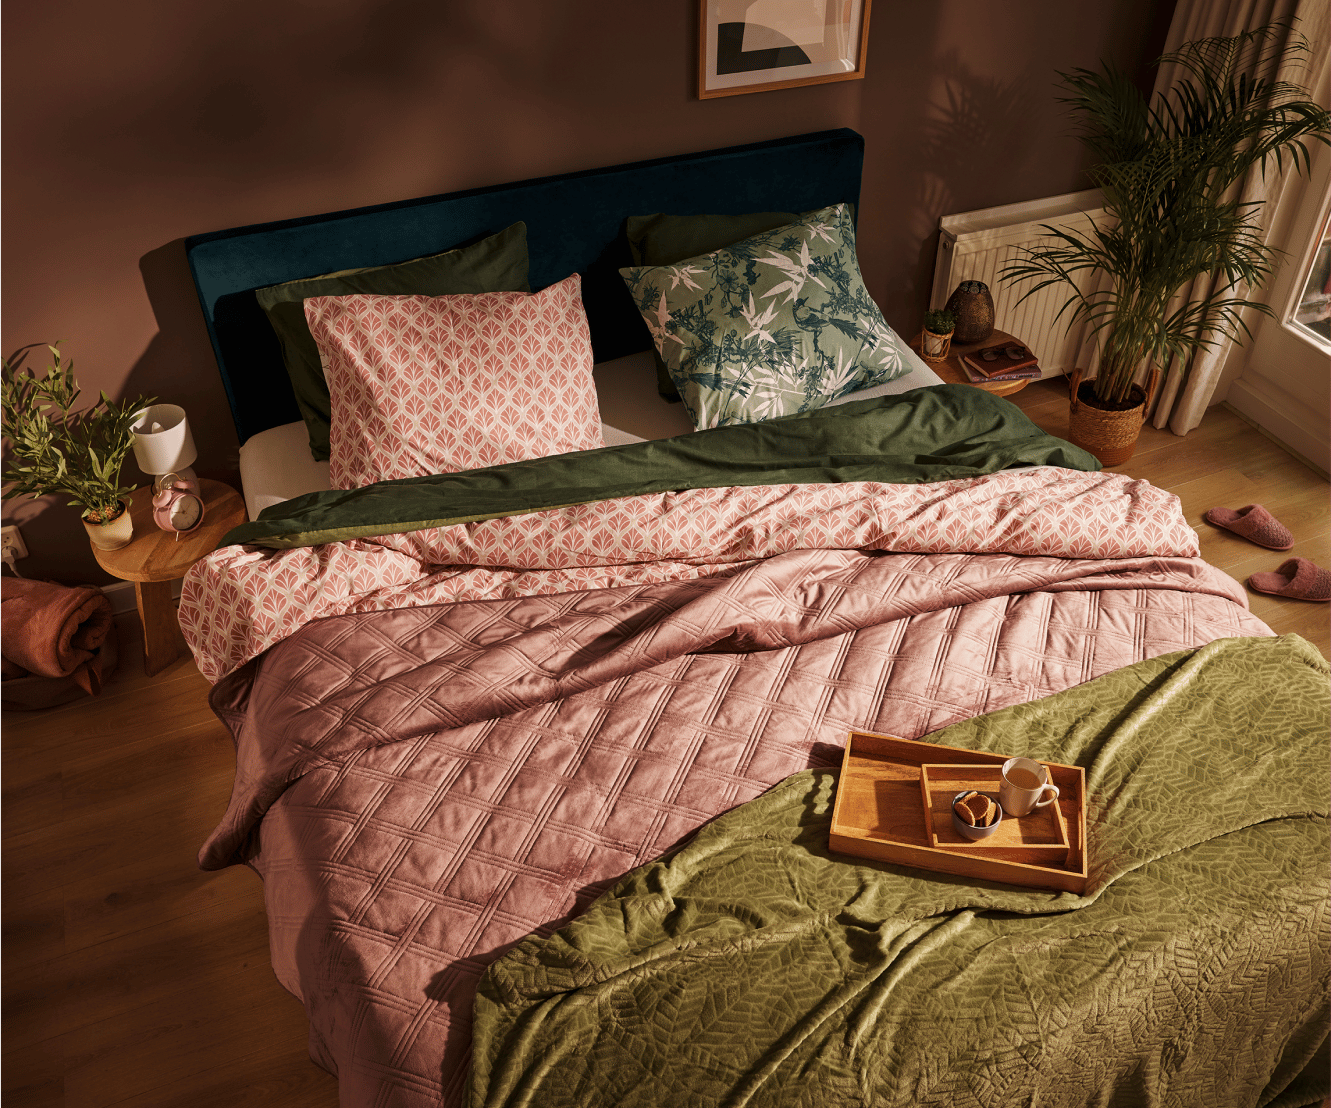 Du linge de lit réalisé en coton provenant de sources durables.